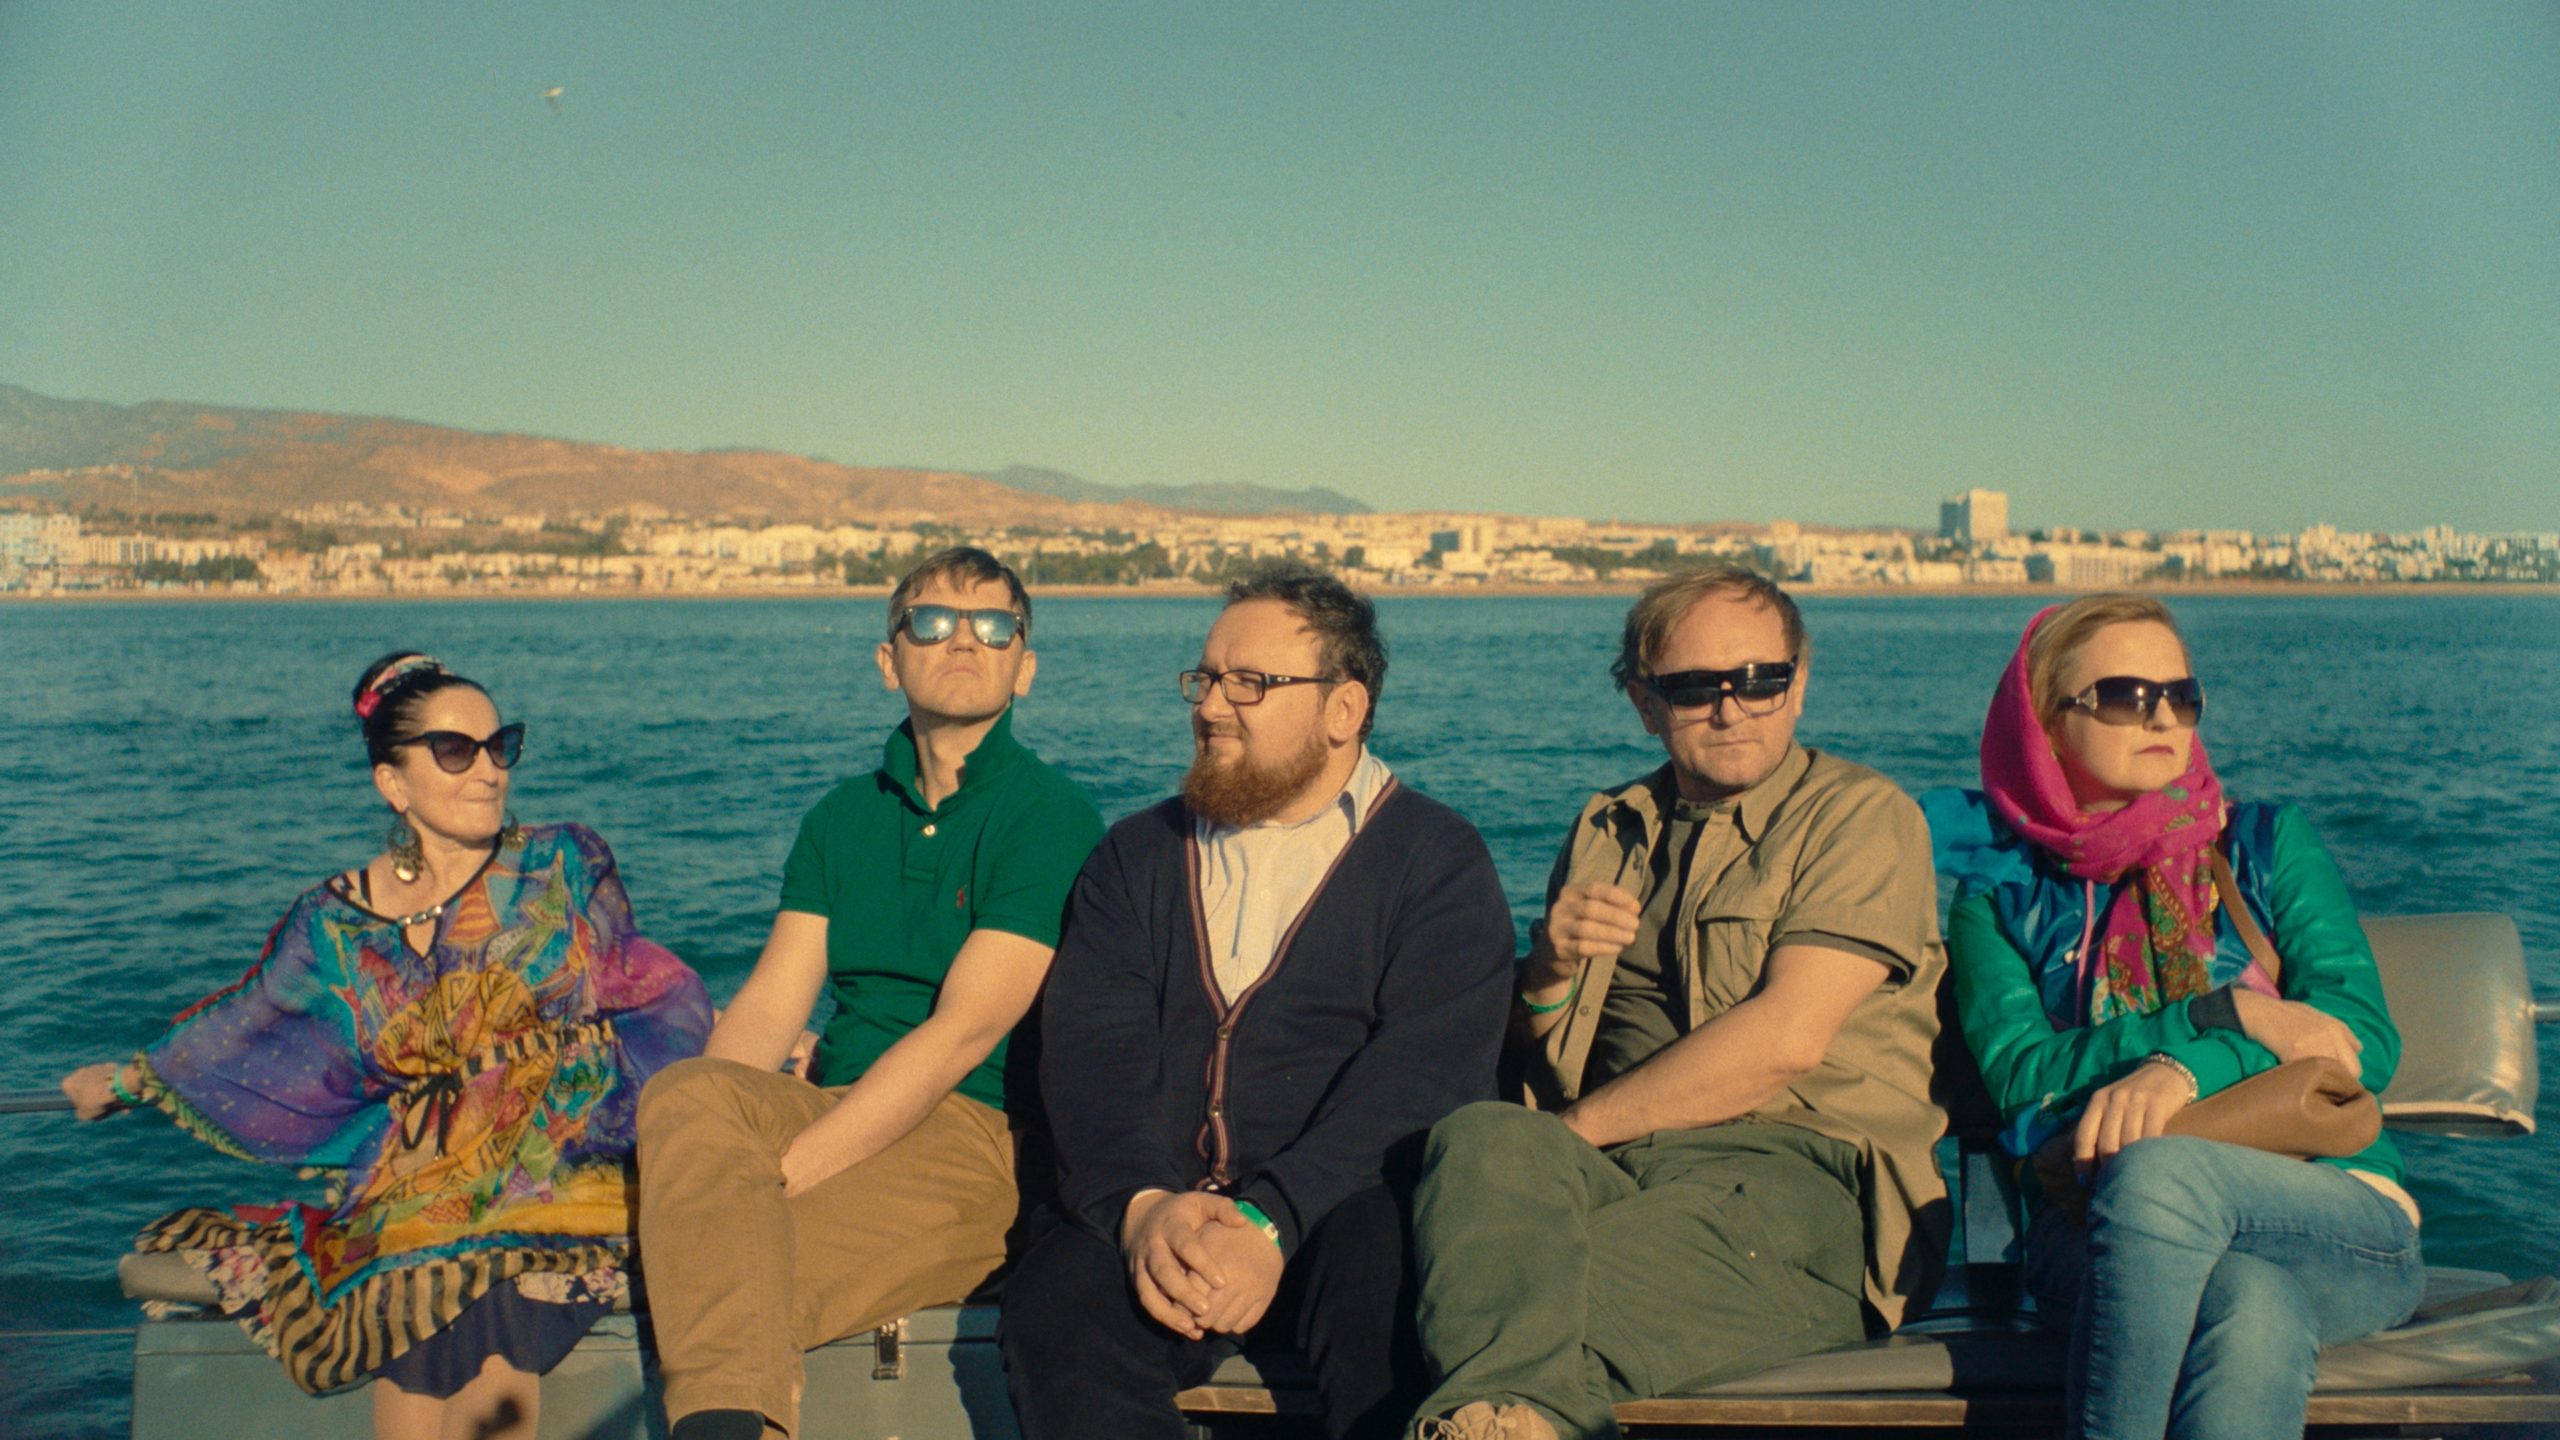 Kadr z filmu "All Inclusive" przedstawiający bohaterów filmu siedzących, w tle widać morze